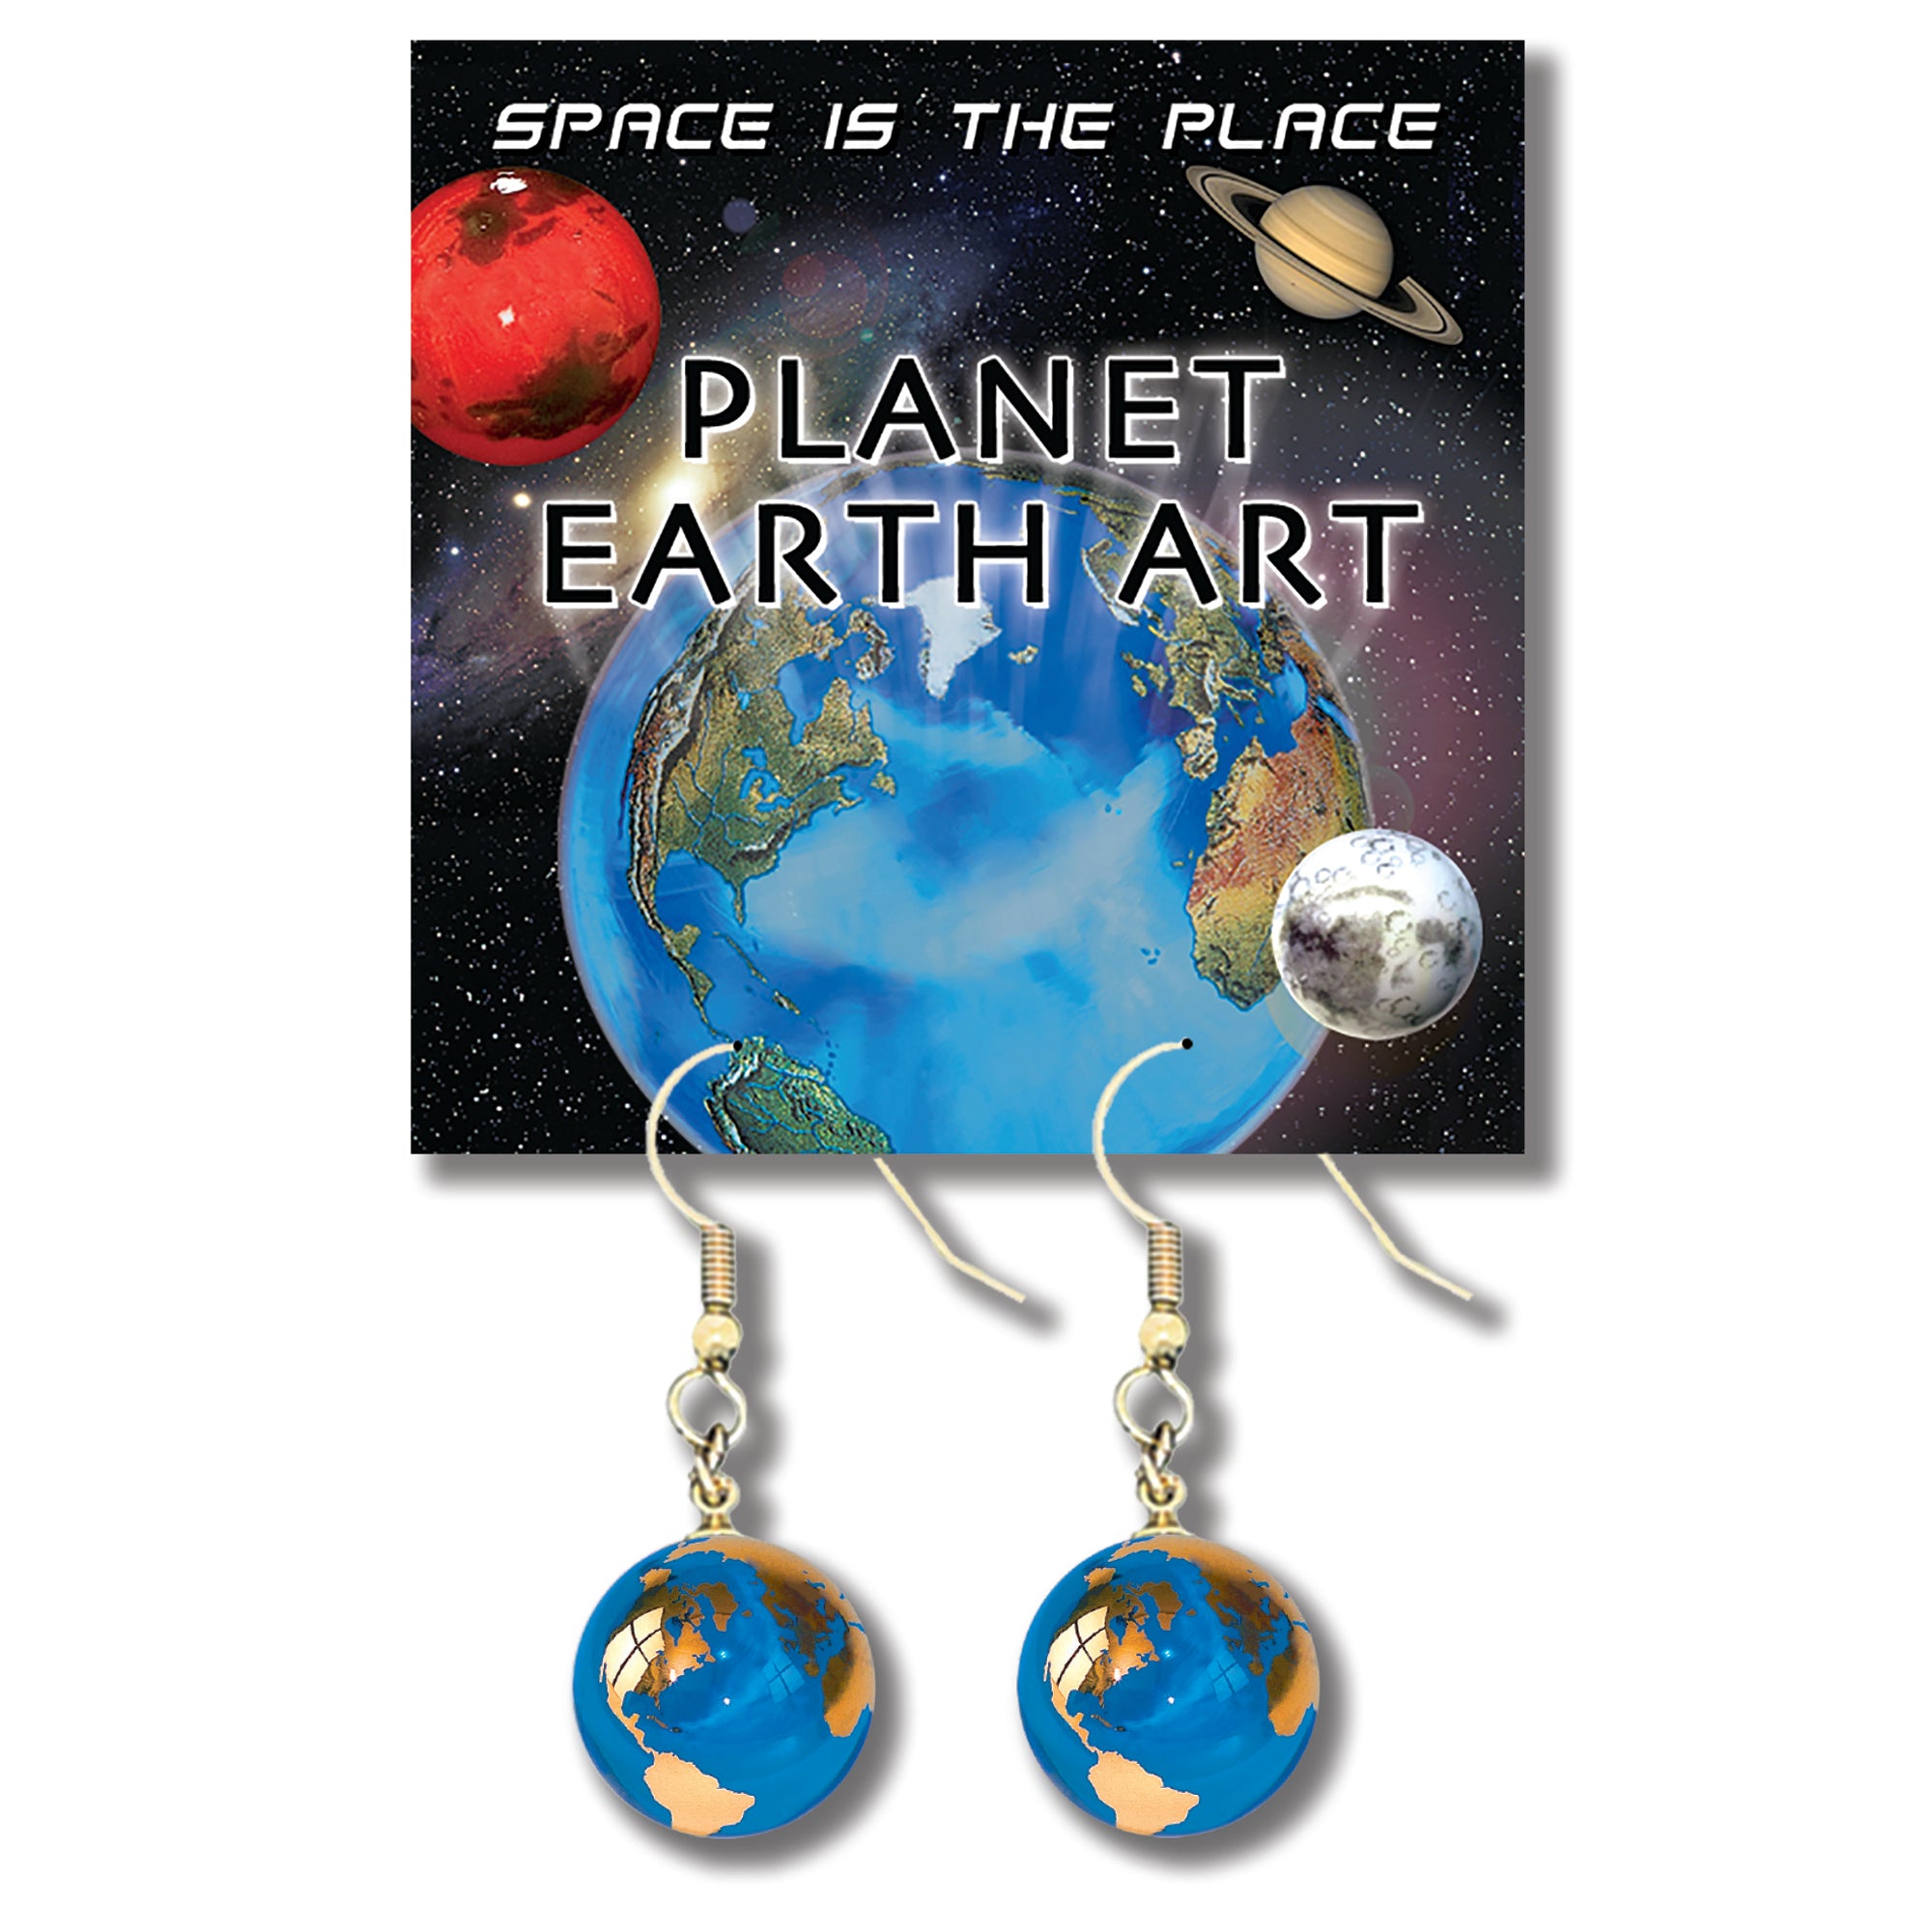 1/2” Golden Earth Earrings